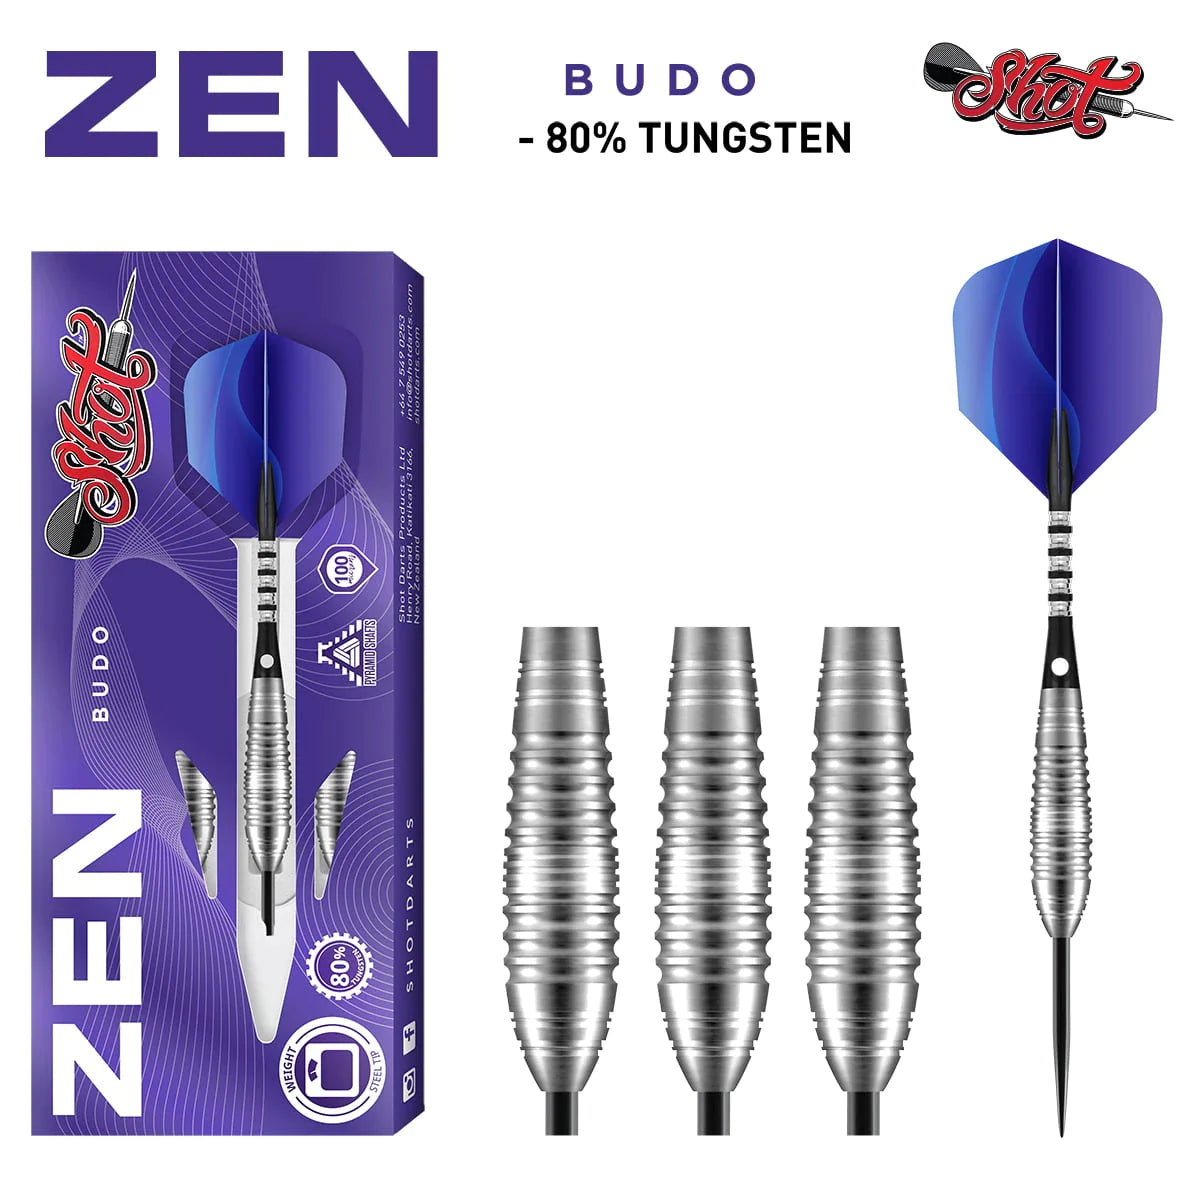 Shot Zen Budo 23g 80% Tungsten Steel Tip Darts